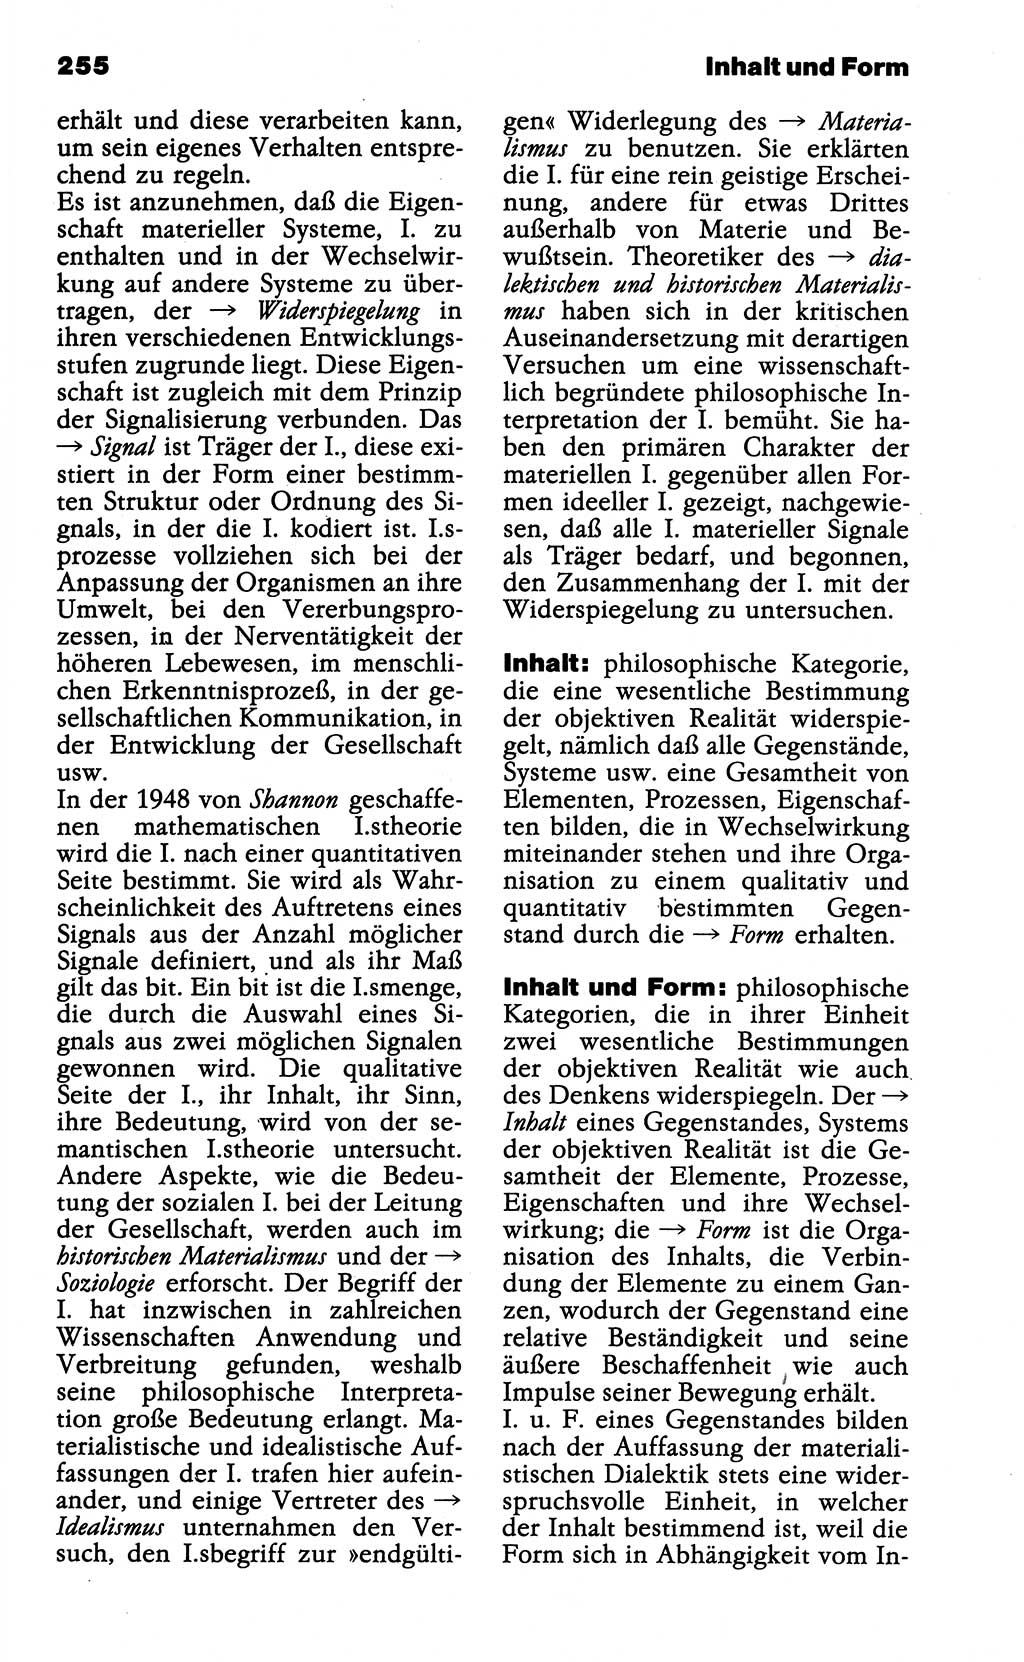 WÃ¶rterbuch der marxistisch-leninistischen Philosophie [Deutsche Demokratische Republik (DDR)] 1985, Seite 255 (Wb. ML Phil. DDR 1985, S. 255)